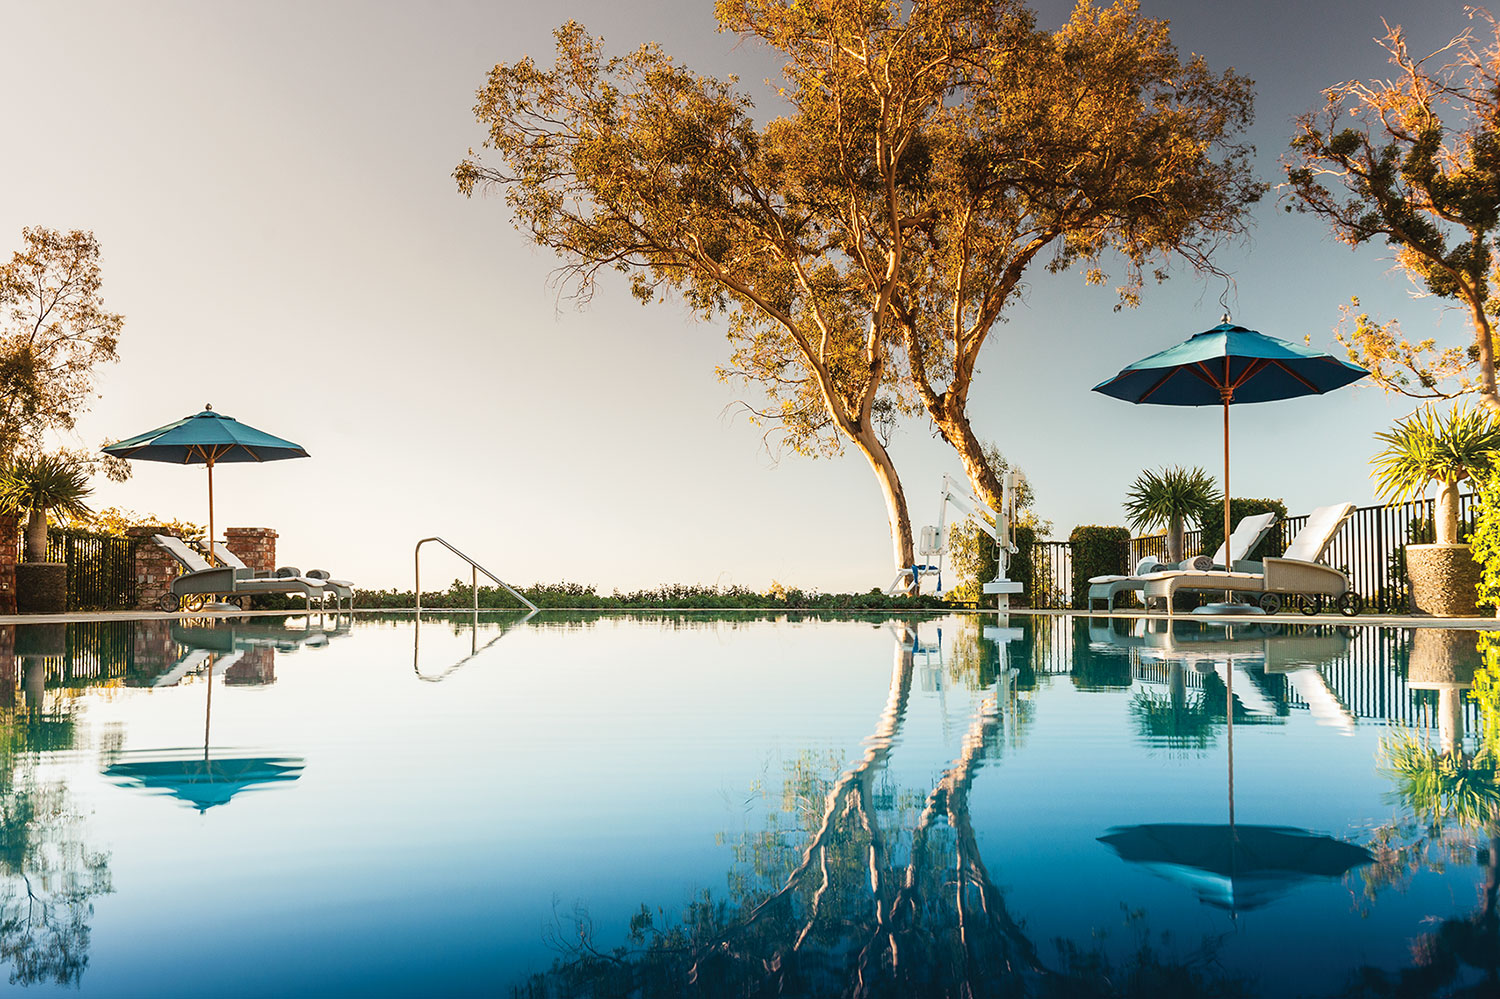 Best hotels in Santa Barbara, Belmond El Encanto pool